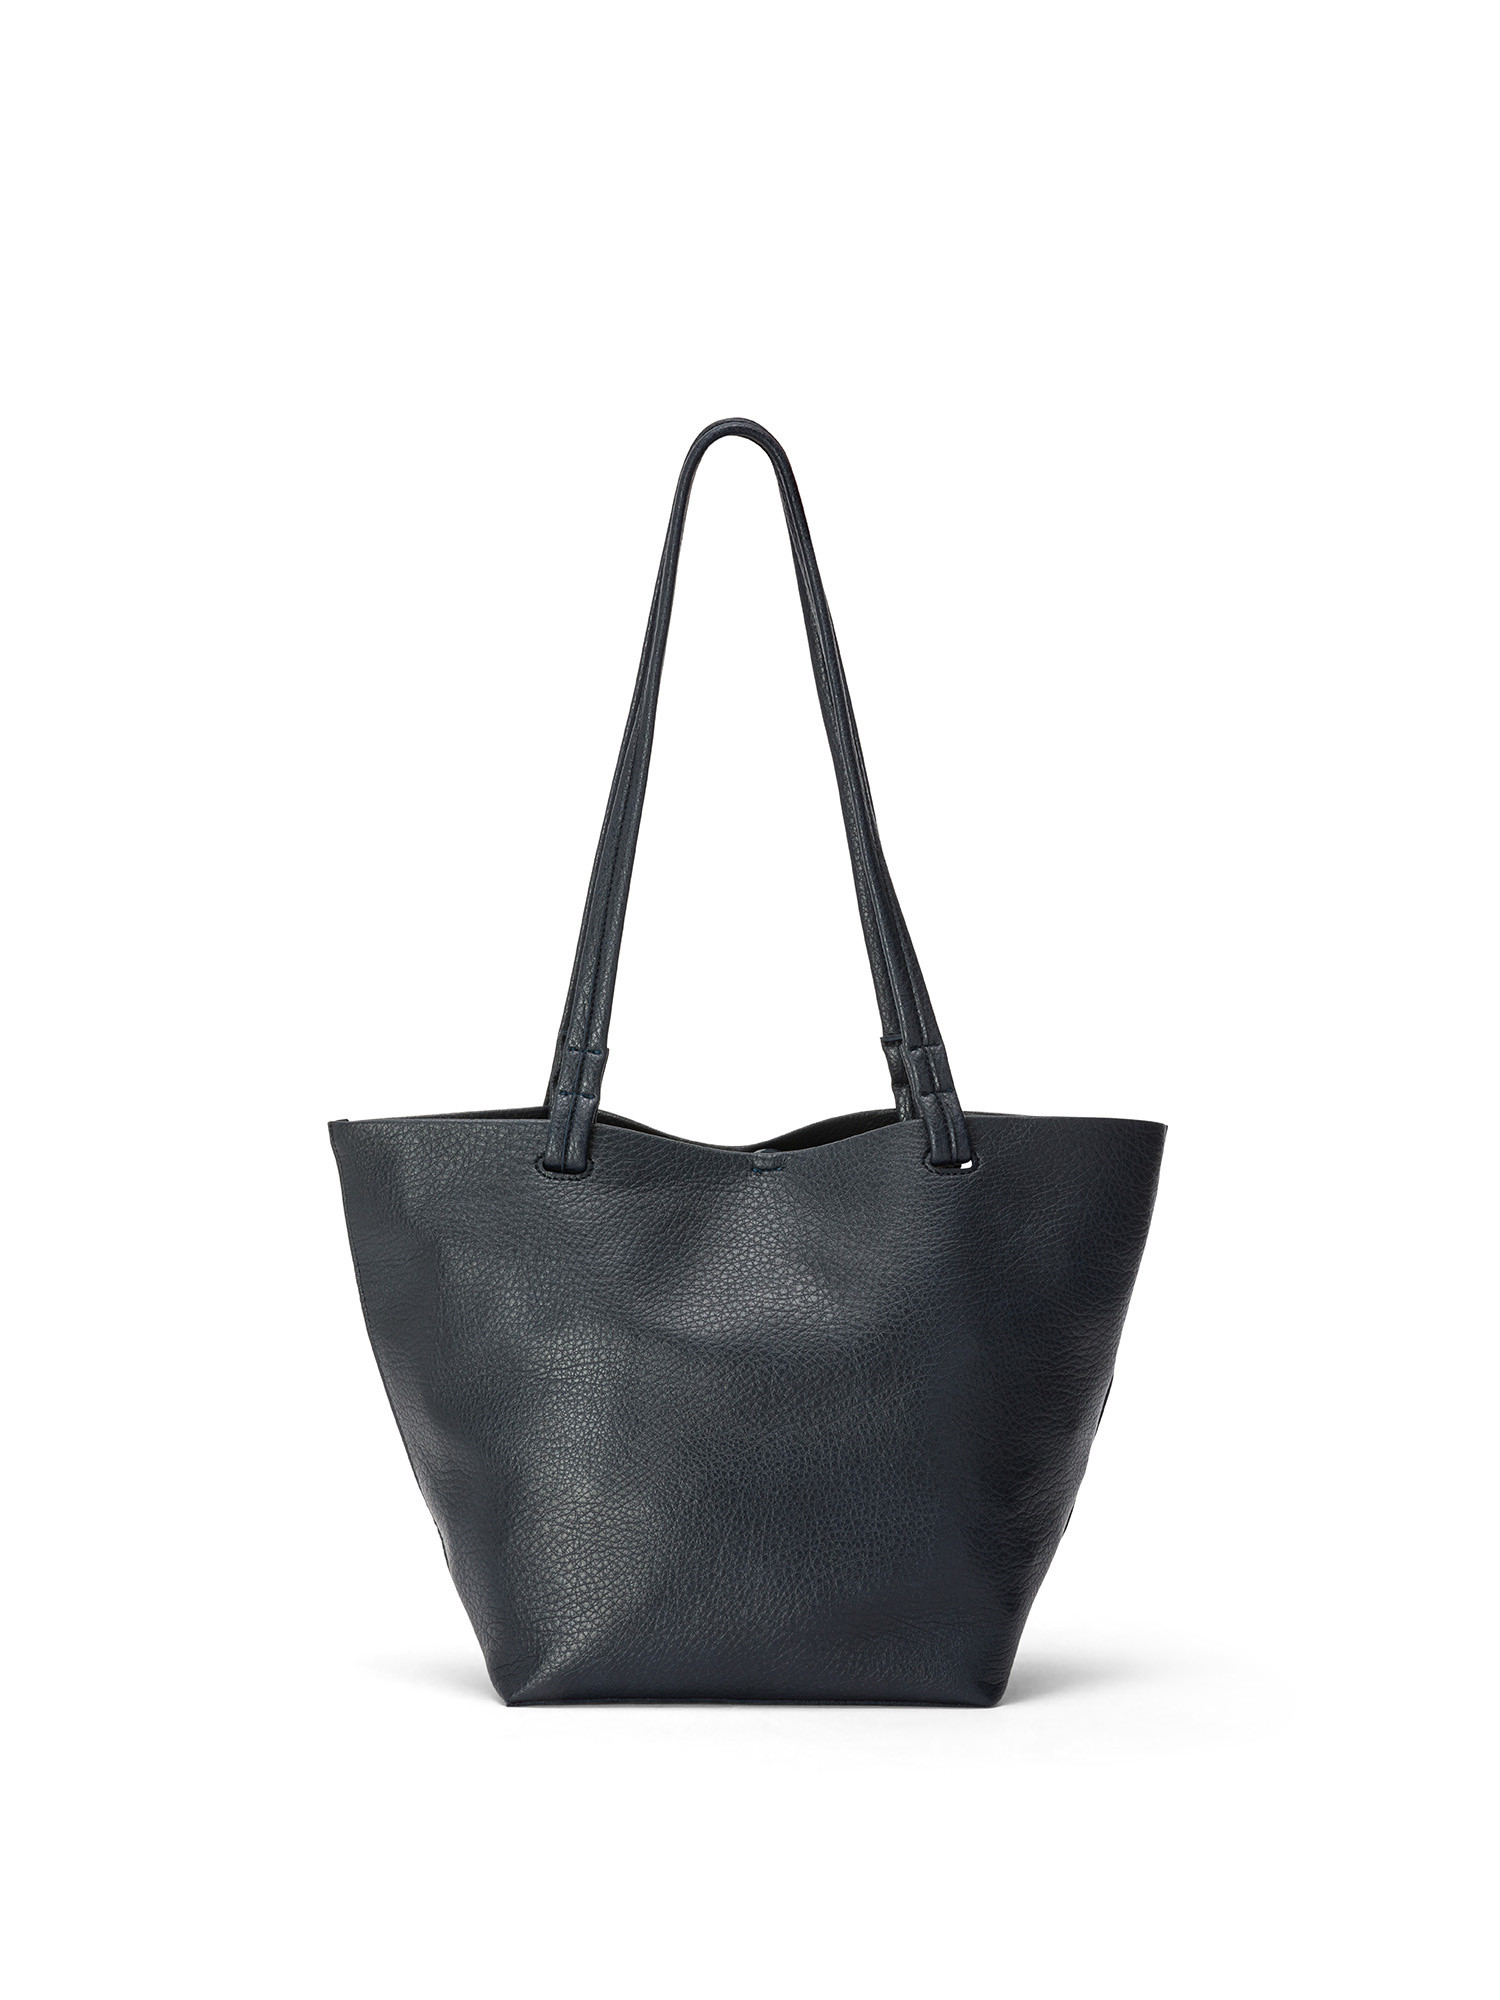 Koan - Shopping bag, Dark Blue, large image number 0